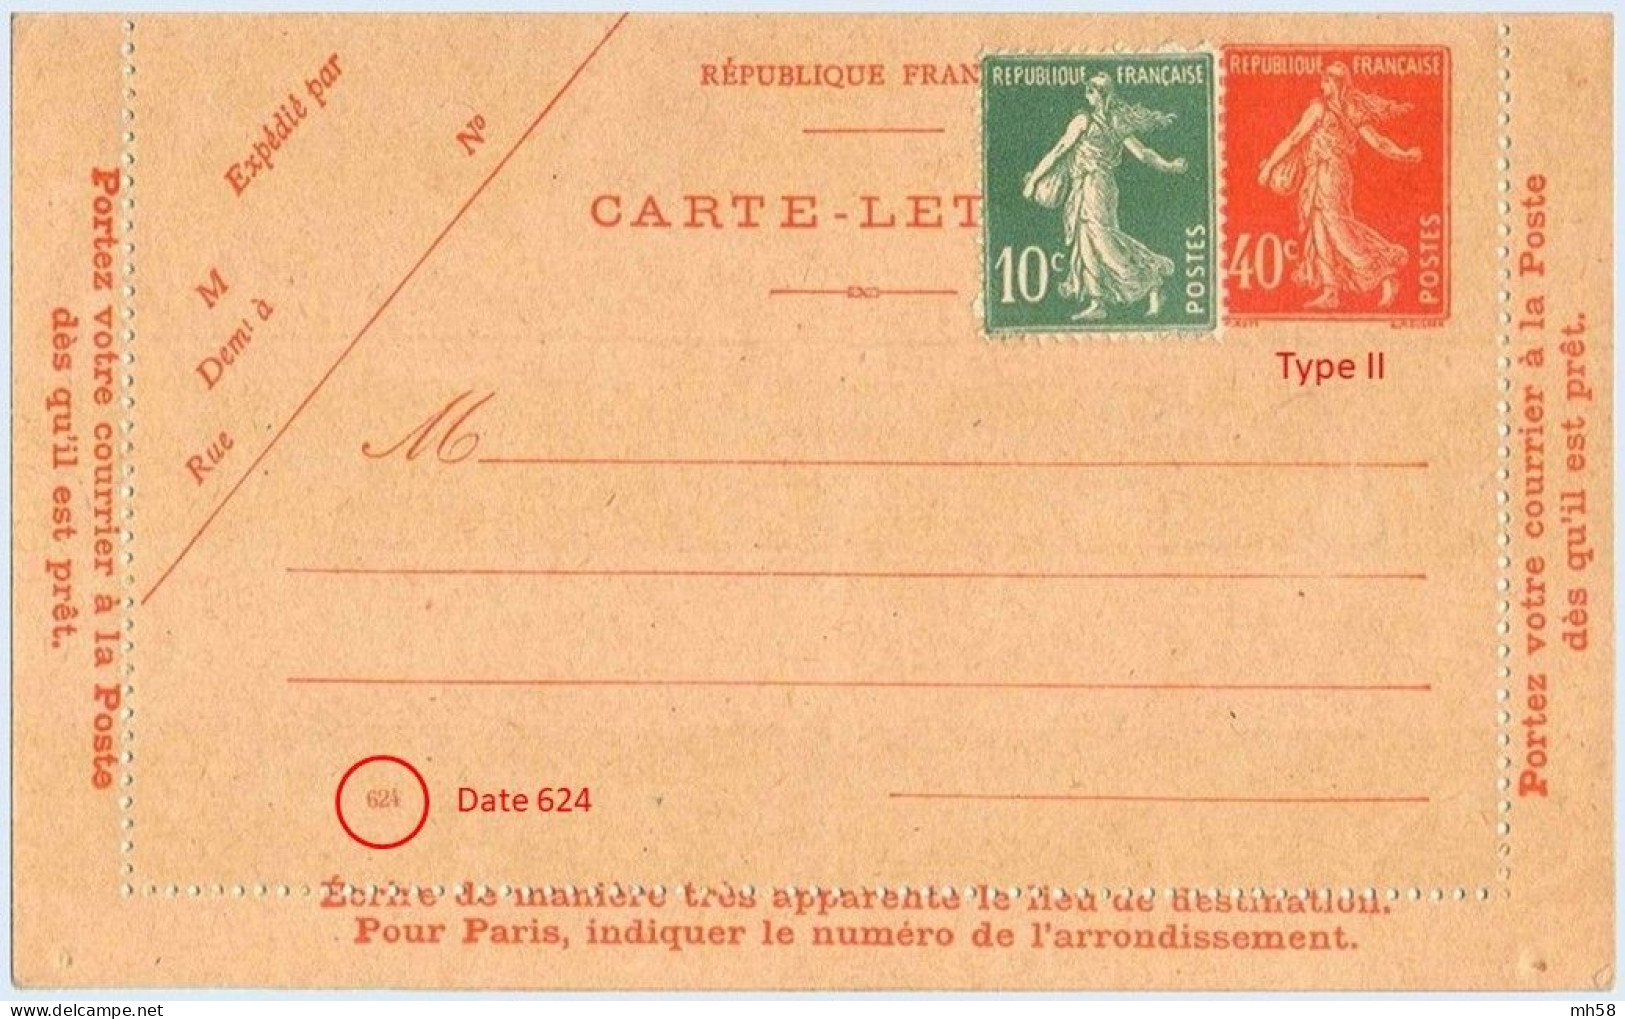 Entier FRANCE - Carte-lettre Date 624 Neuf ** - 40c Semeuse Vermillon - Cartes-lettres